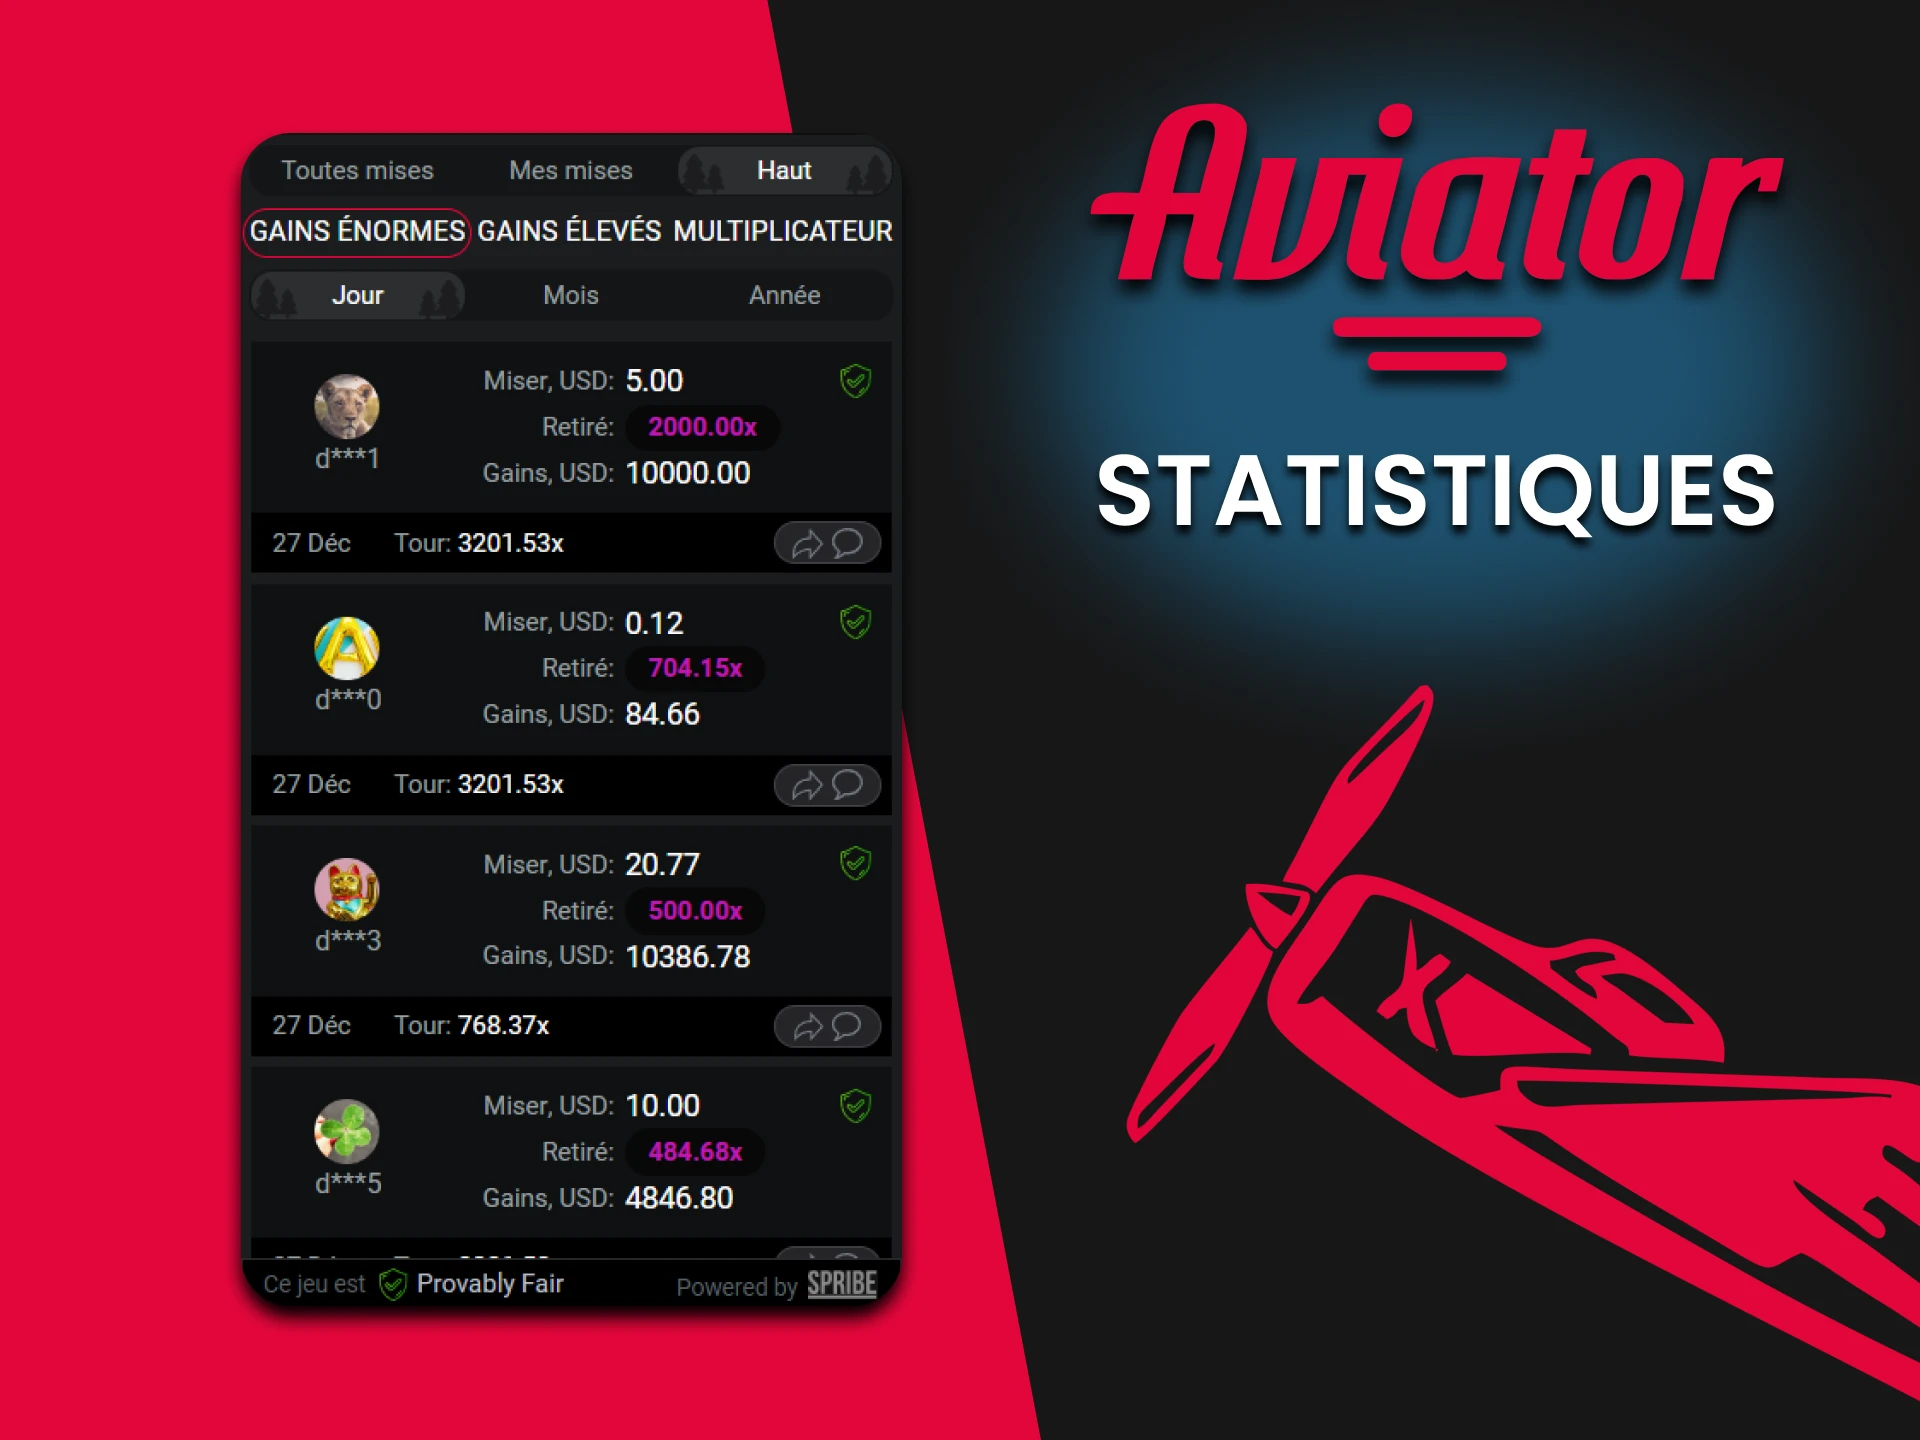 Vous pouvez toujours consulter vos statistiques lorsque vous jouez à Aviator.